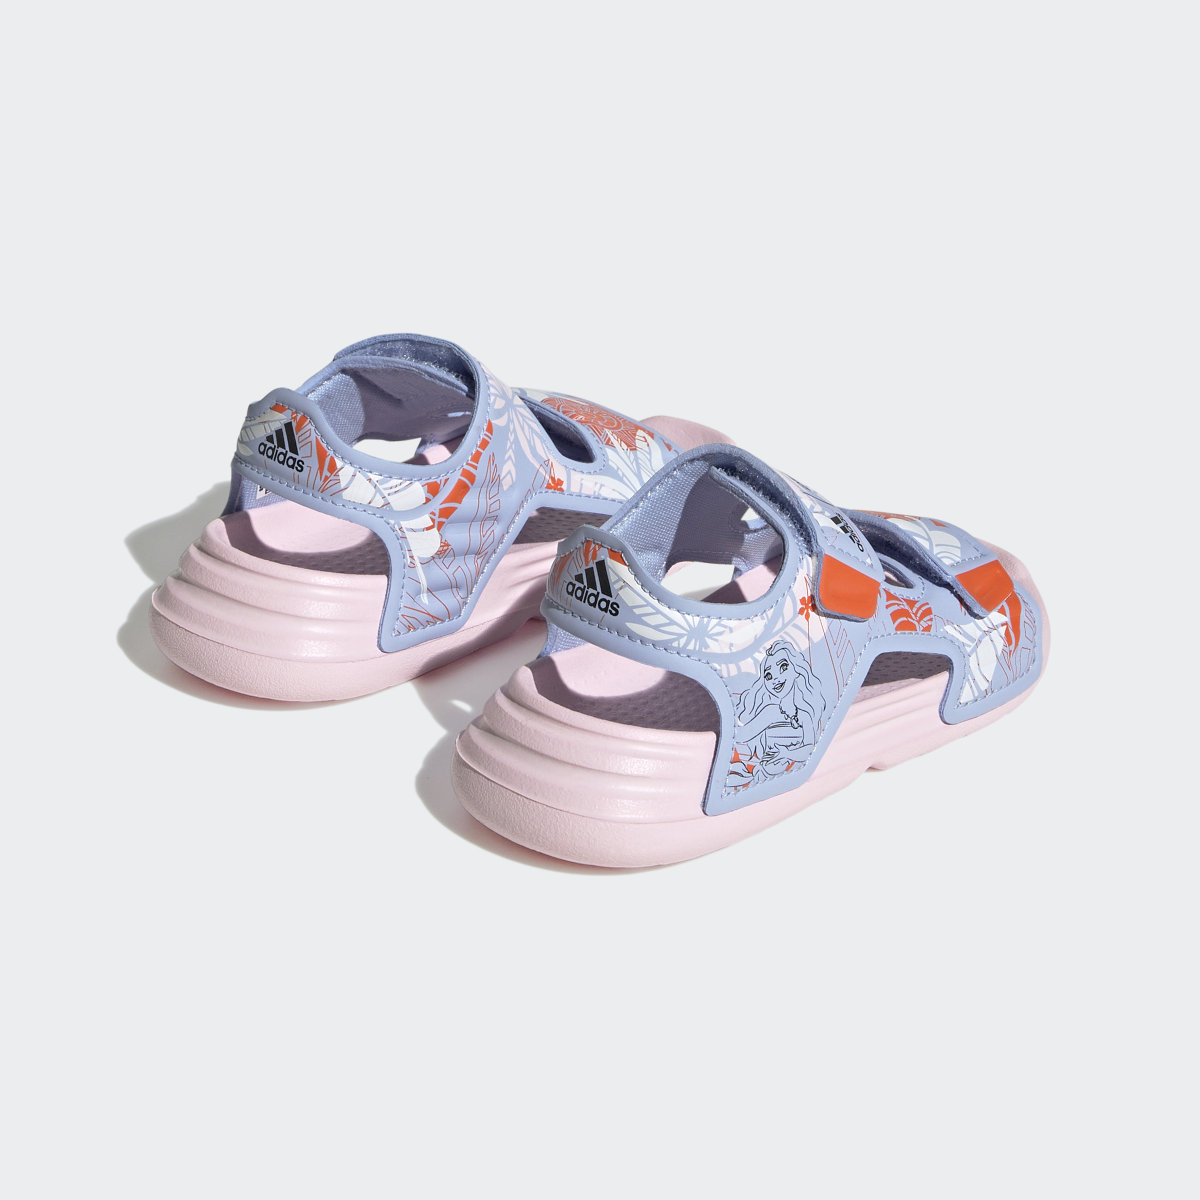 Adidas x Disney AltaSwim Moana Swim Sandals. 6